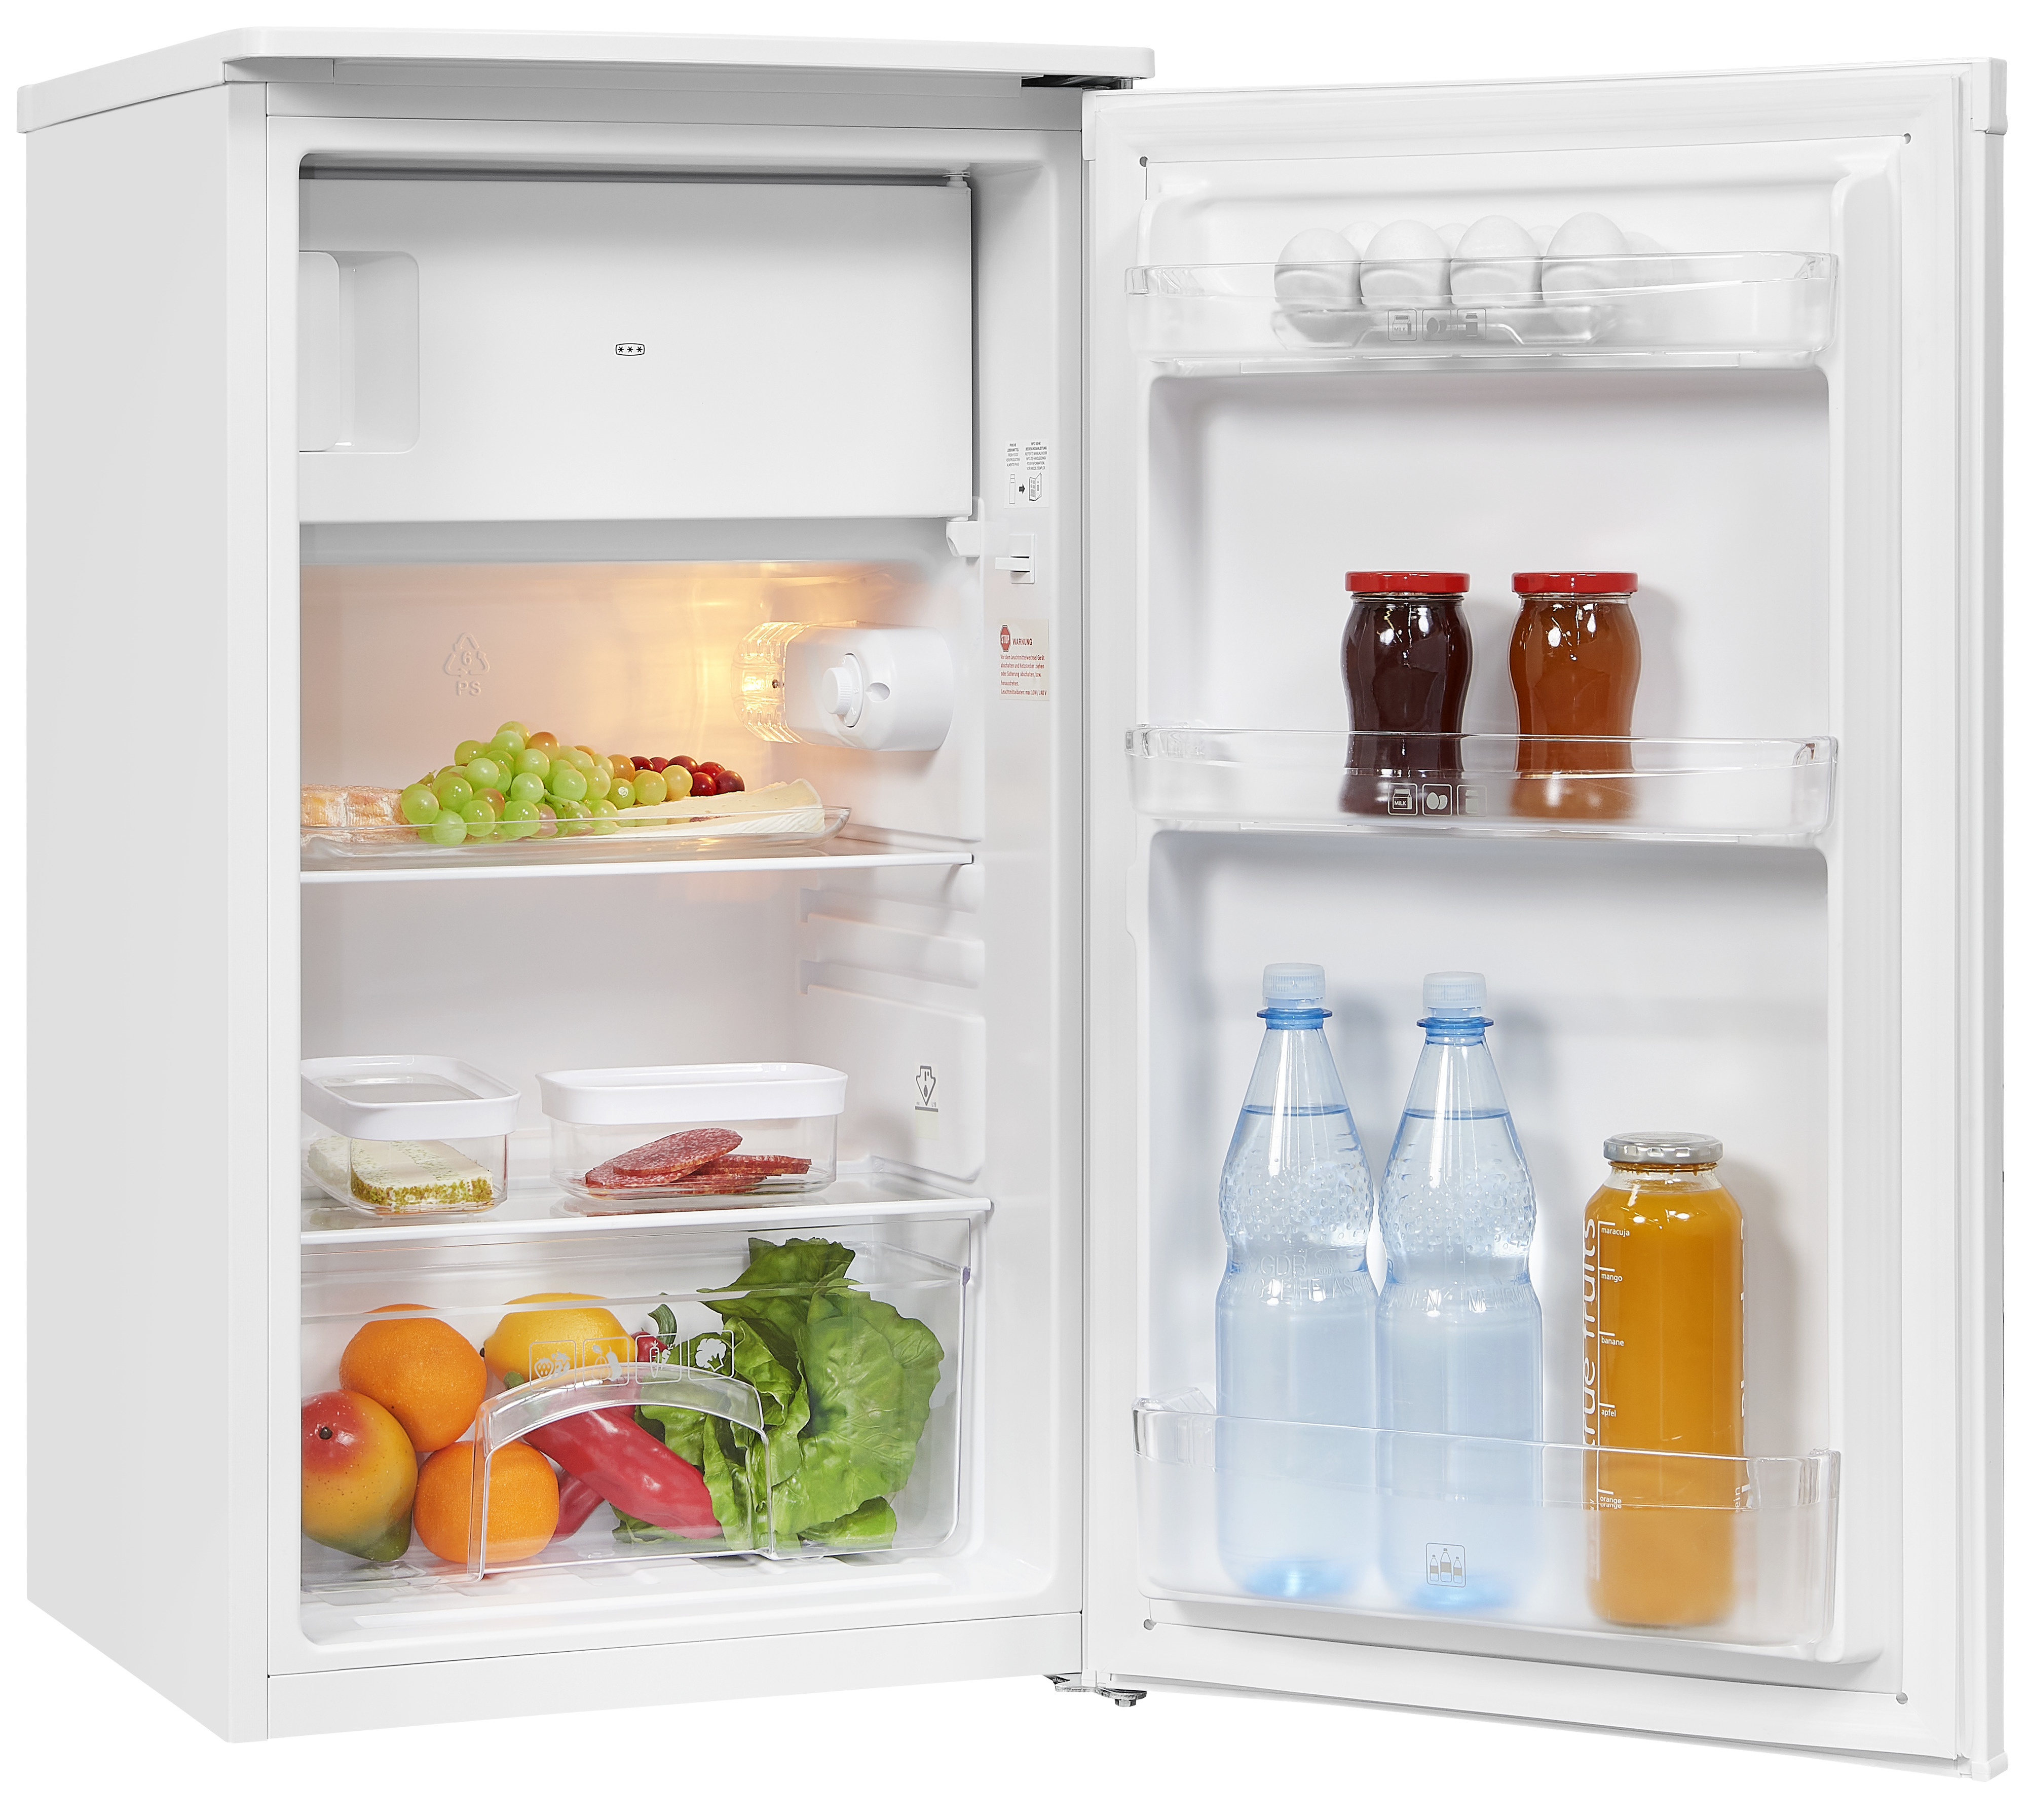 Exquisit KS117-3-040E frigorifero Libera installazione 70 L E Bianco [810157300]